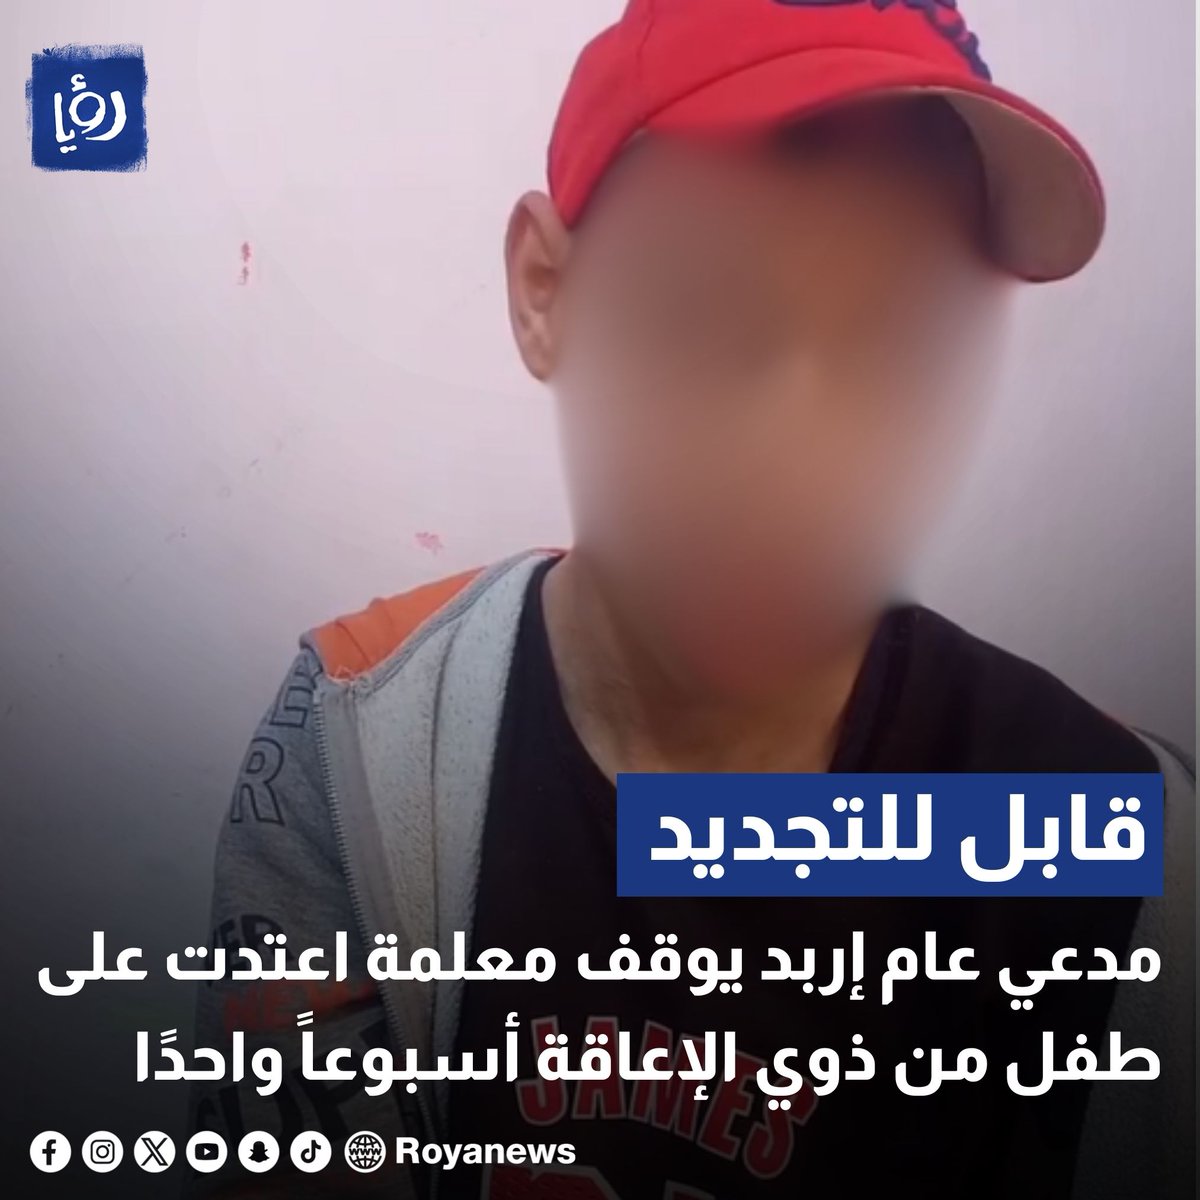 مدعي عام إربد يوقف معلمة اعتدت على طفل من ذوي الإعاقة أسبوعاً واحدًا royanews.tv/news/326456 #عاجل #رؤيا_الإخباري #ذوي_الإعاقة #الأردن